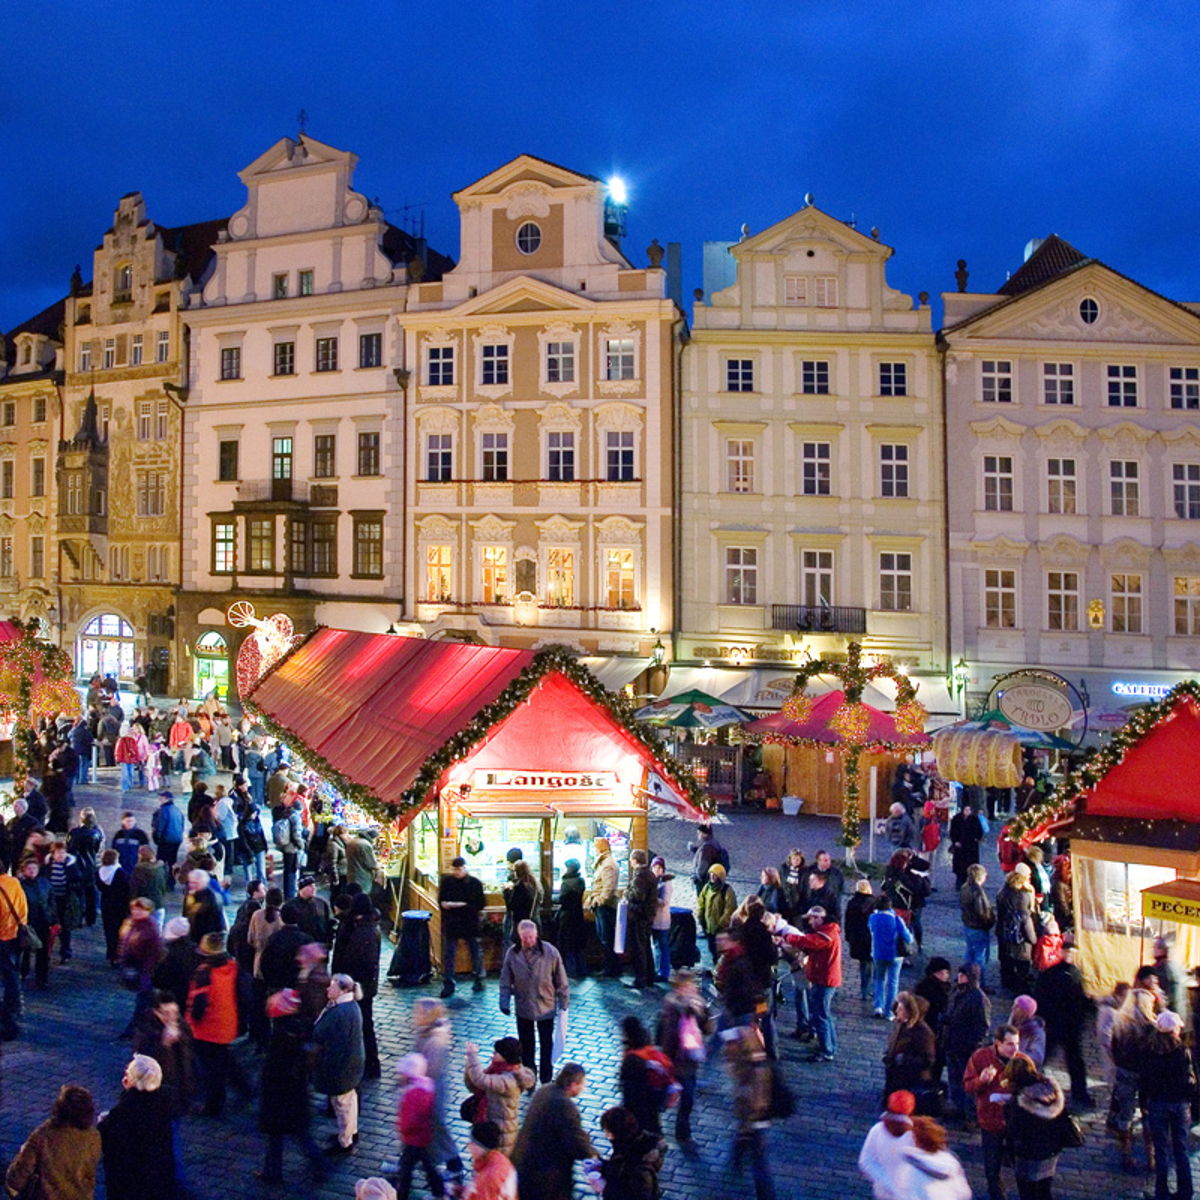 Tour the famous Christmas markets of Prague